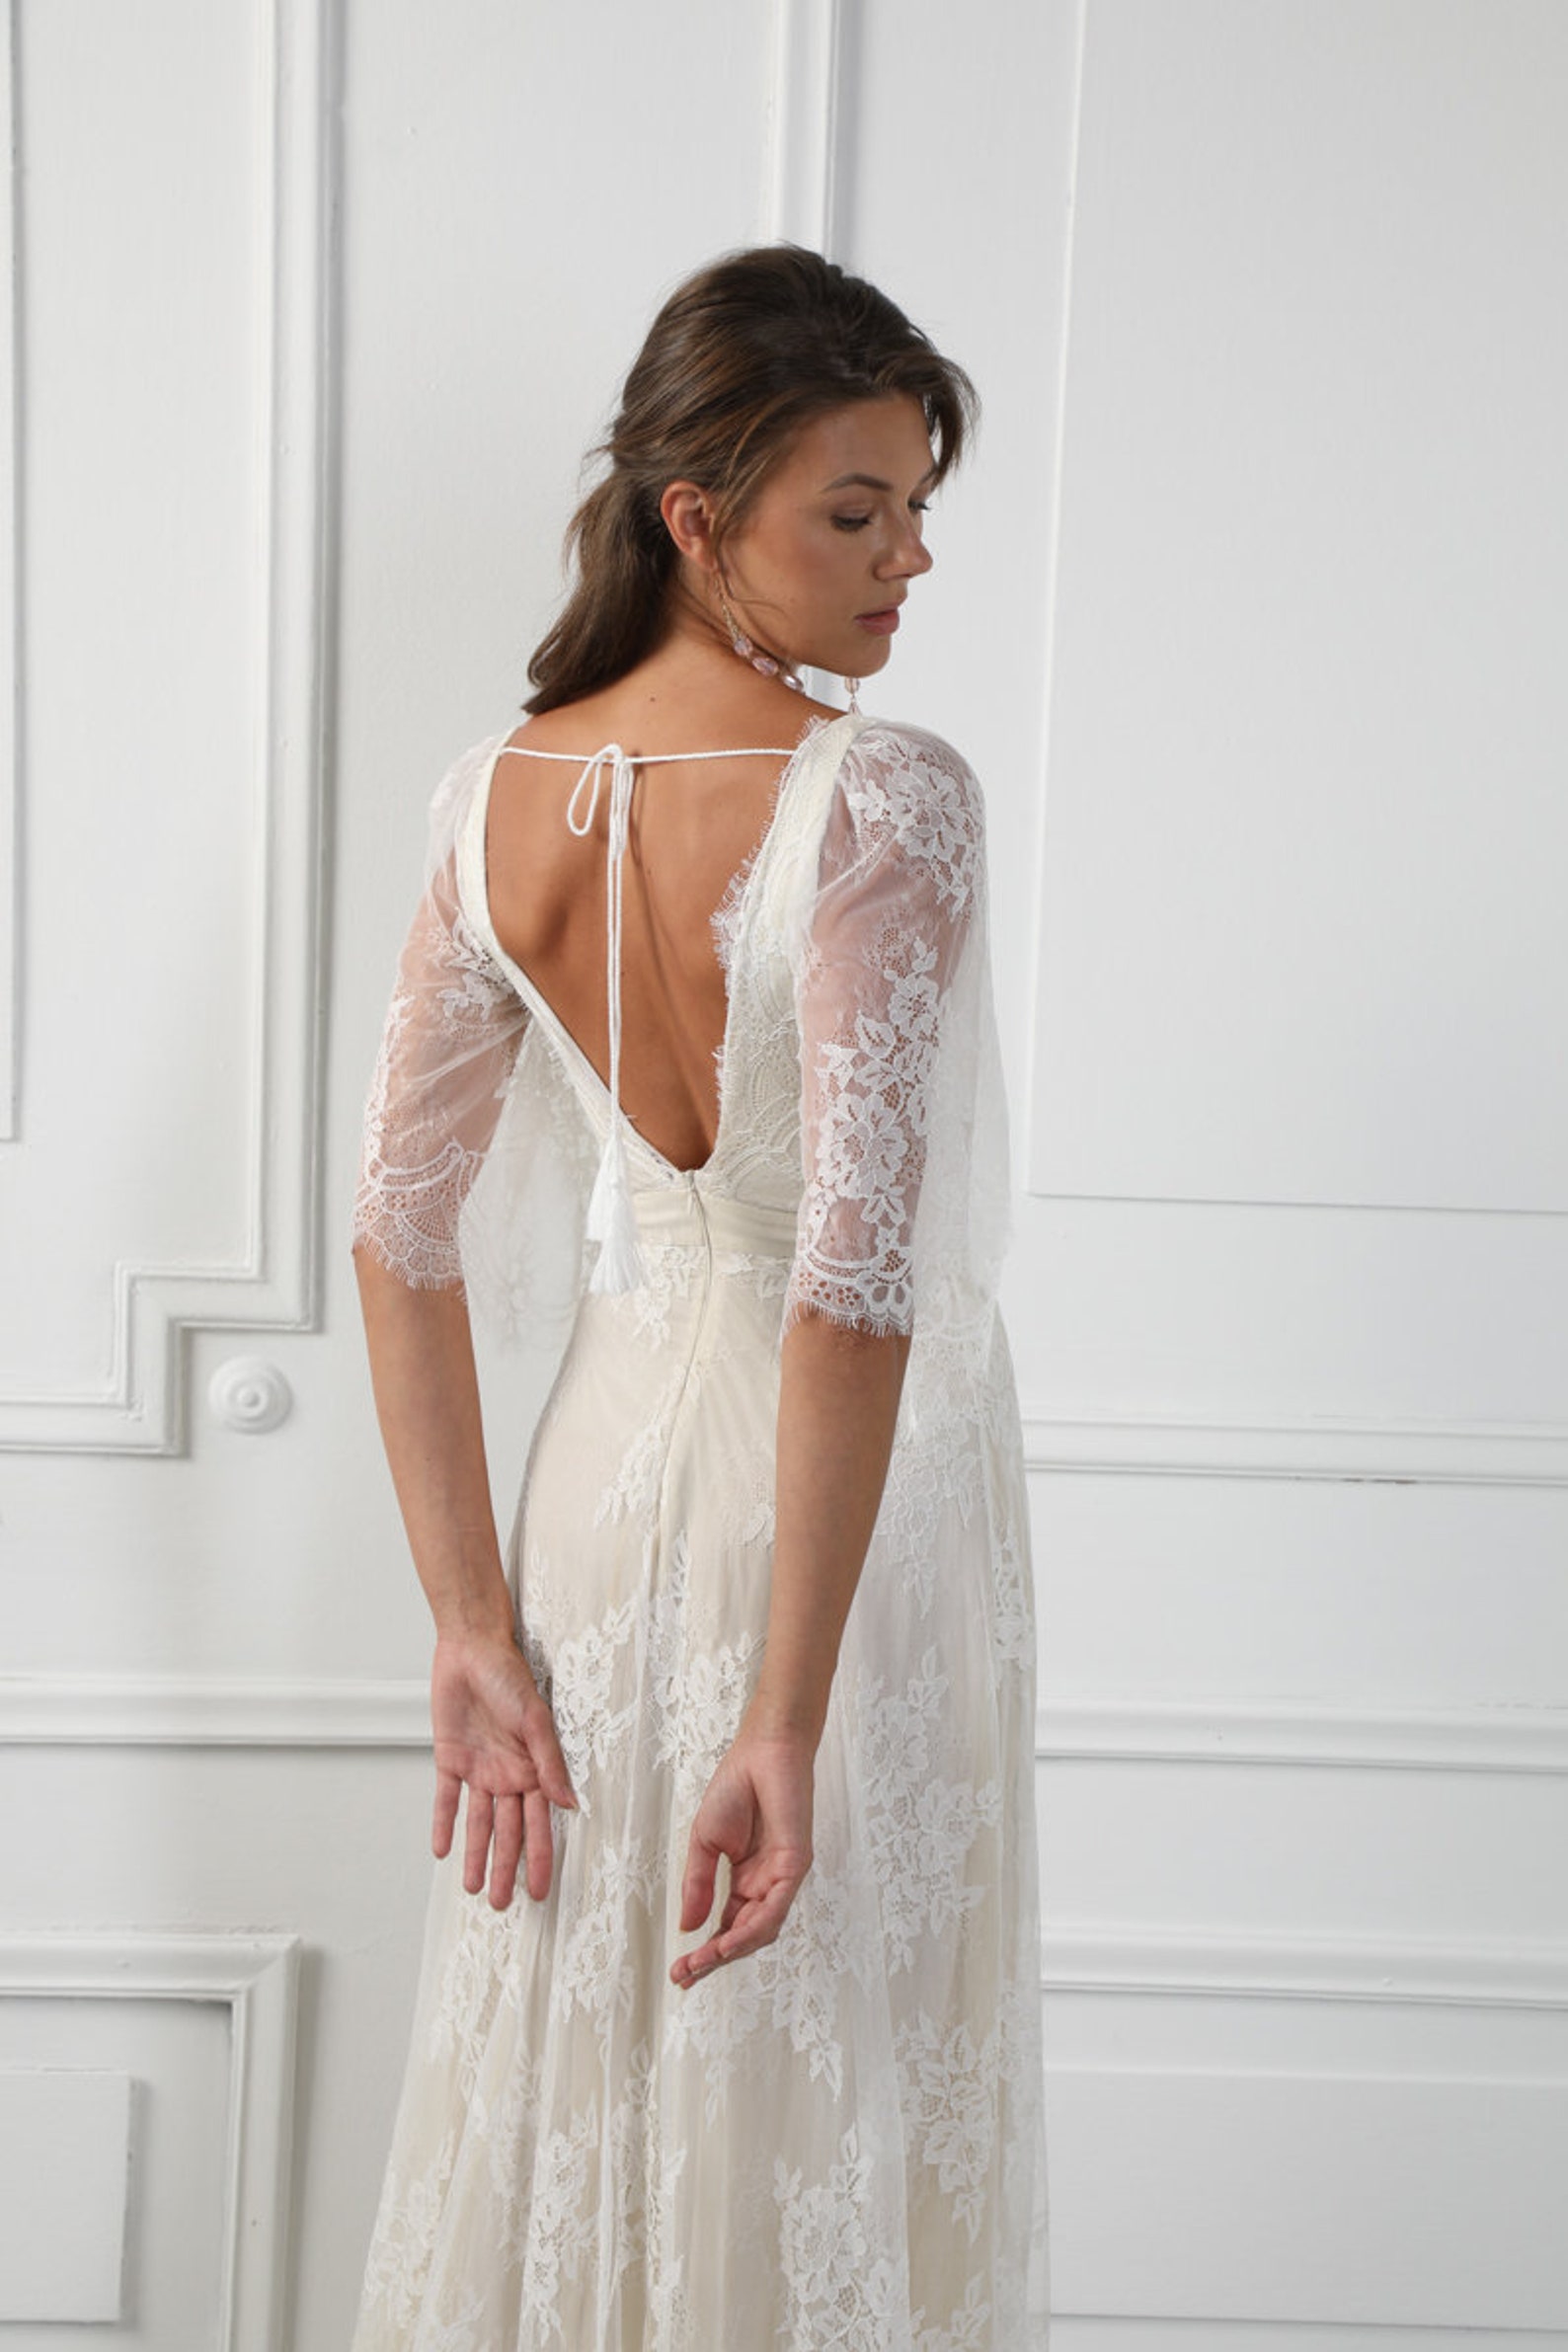 JOLANDA Boho Wrap Skirt French Lace Wedding Dress Bohemian | Etsy